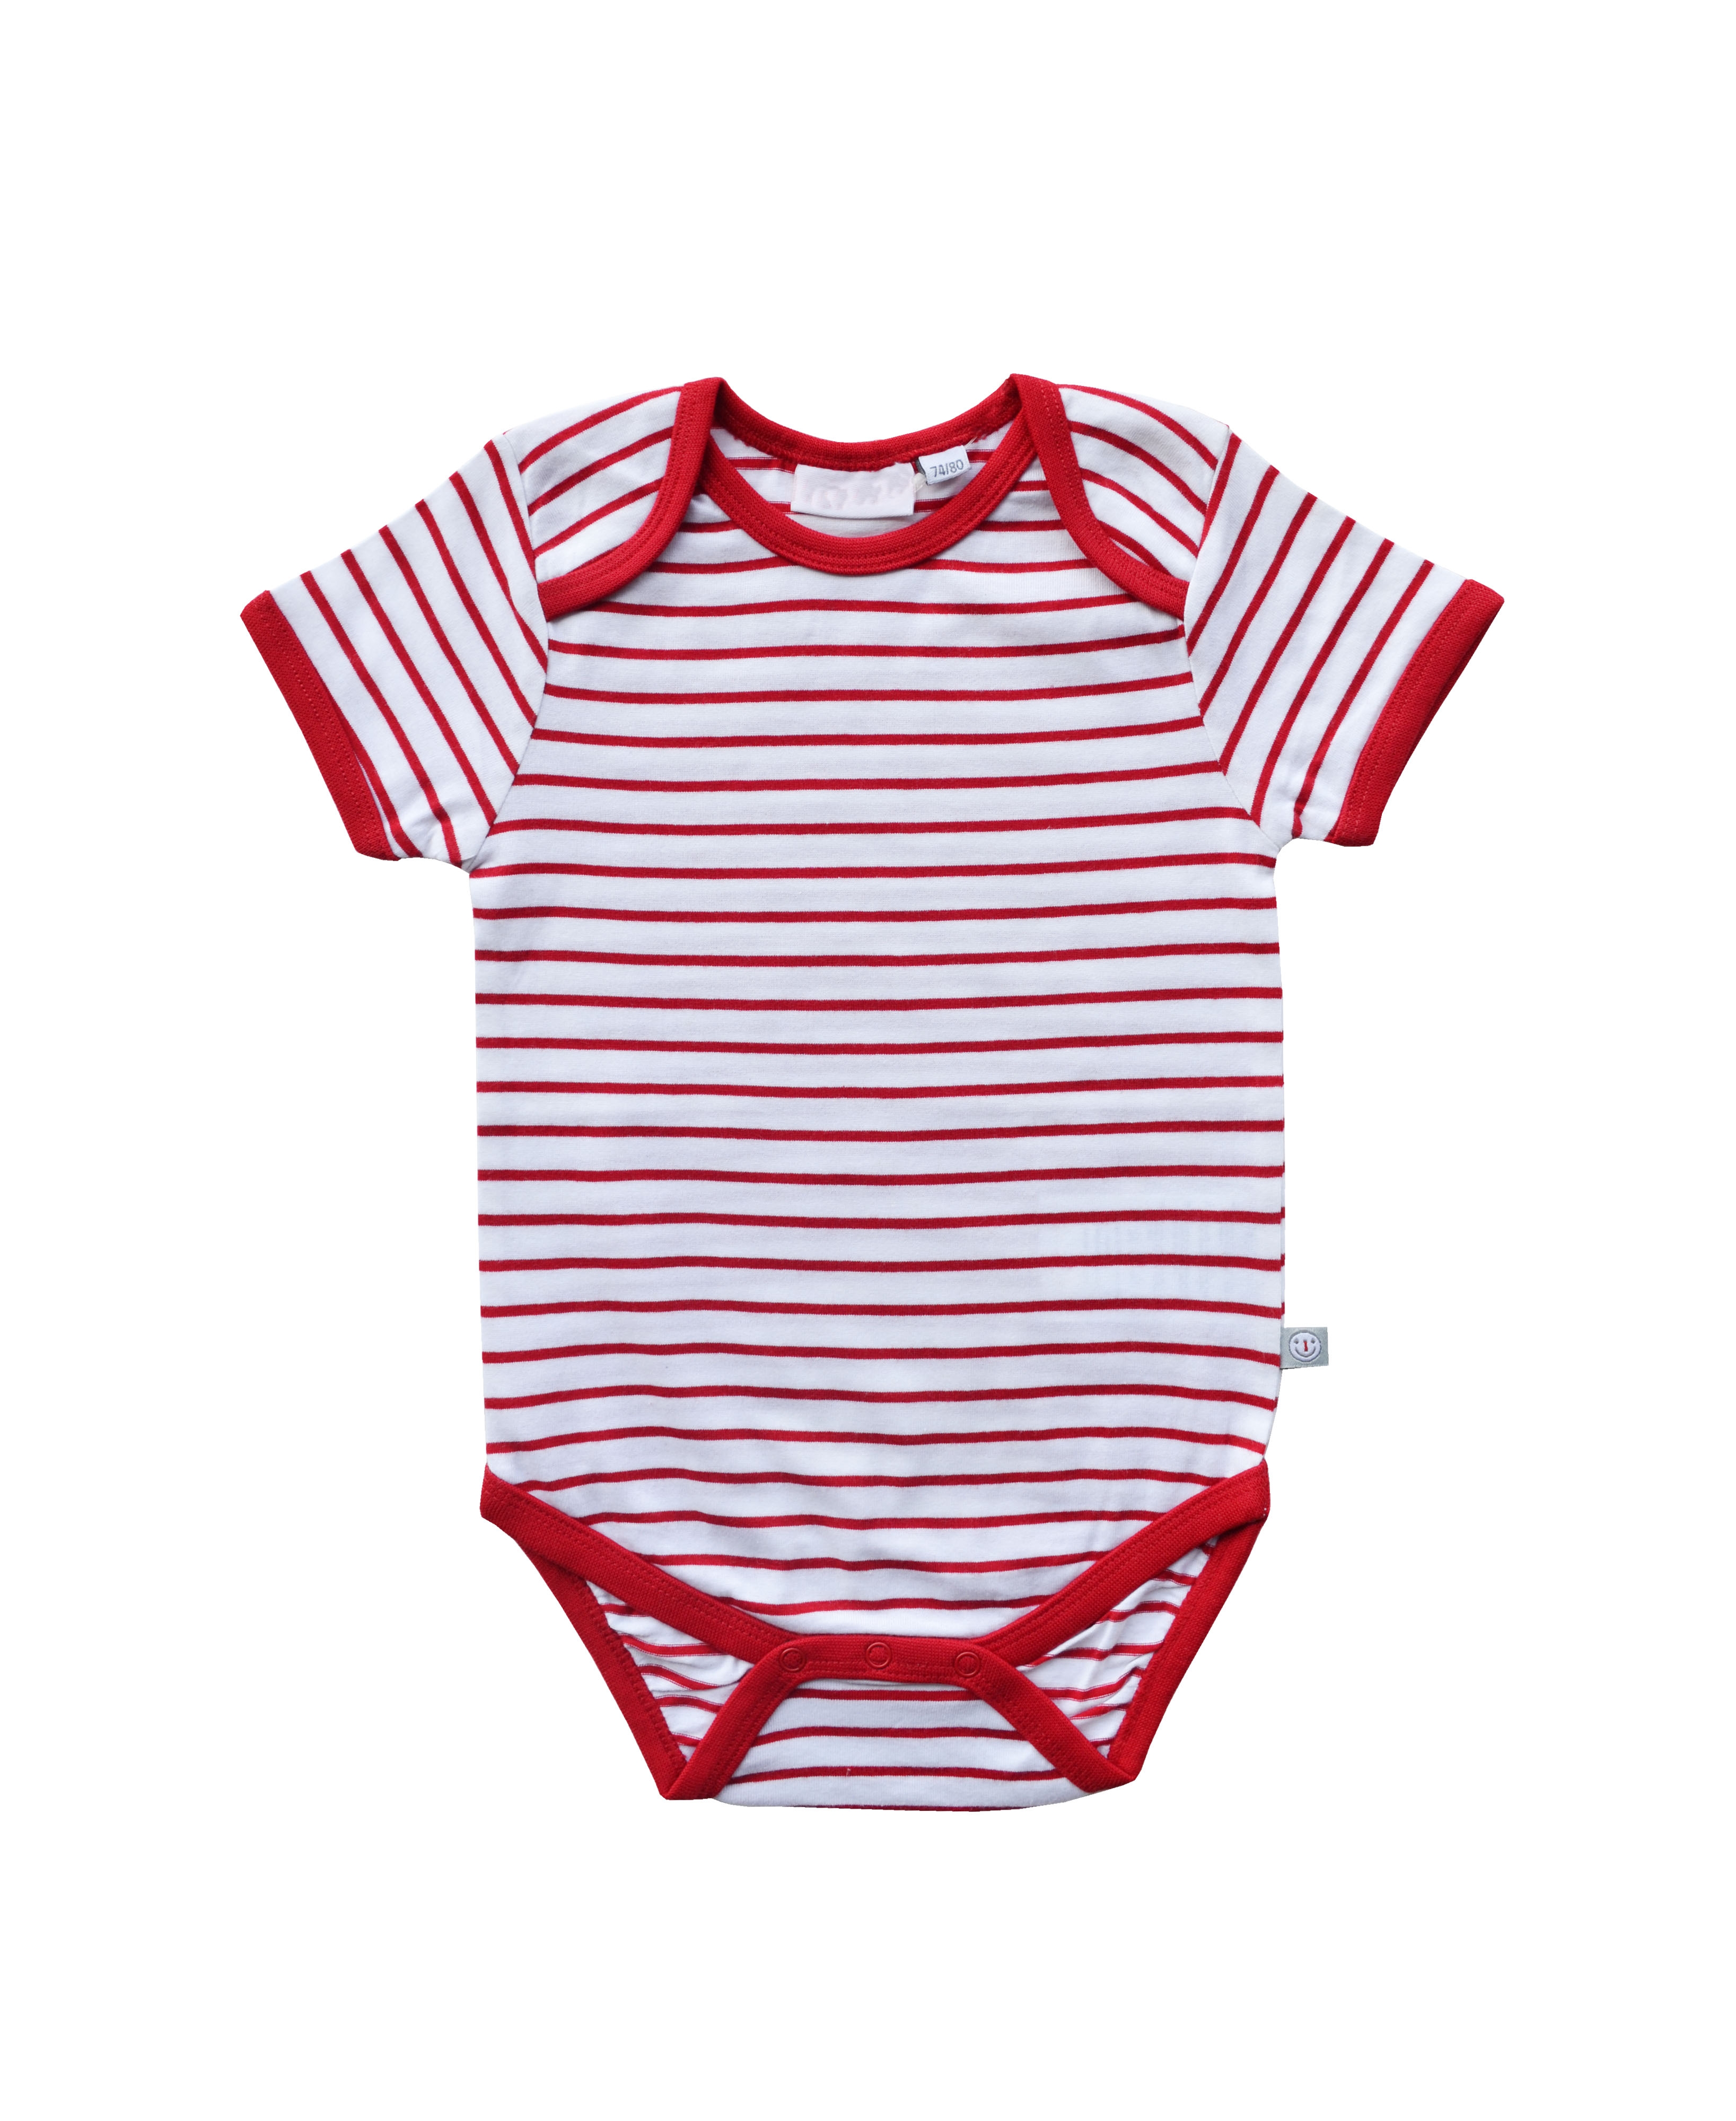 Babeez | Red / White Stripe Bodysuit (100% Cotton Jersey) undefined